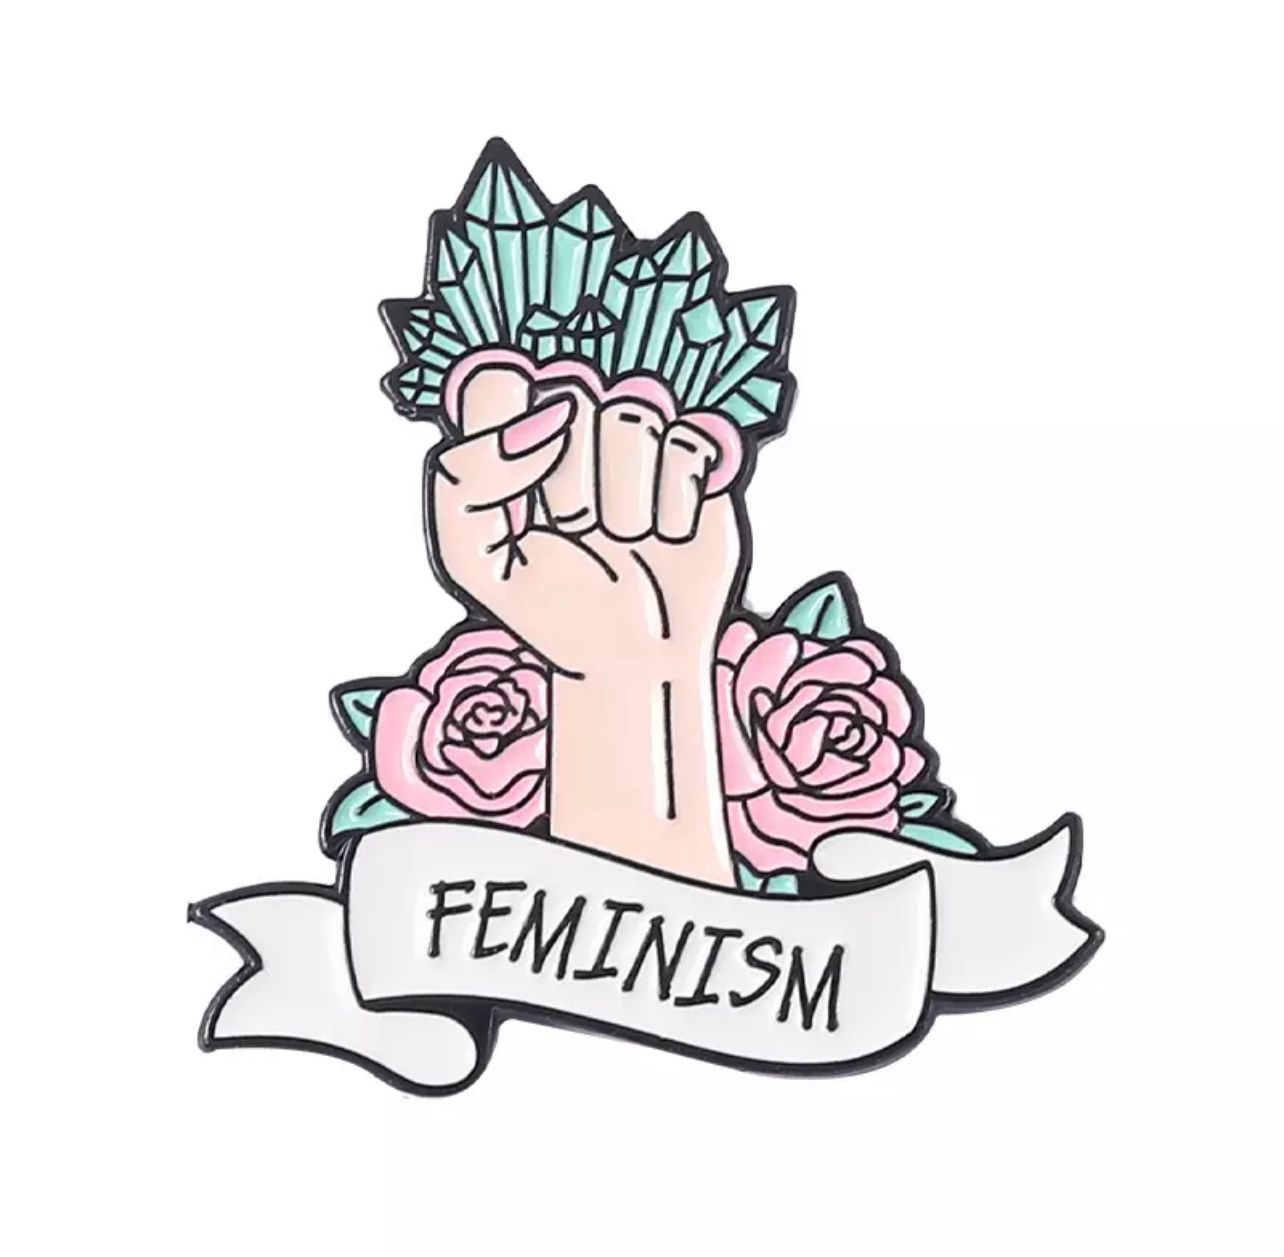 FEMINISM!